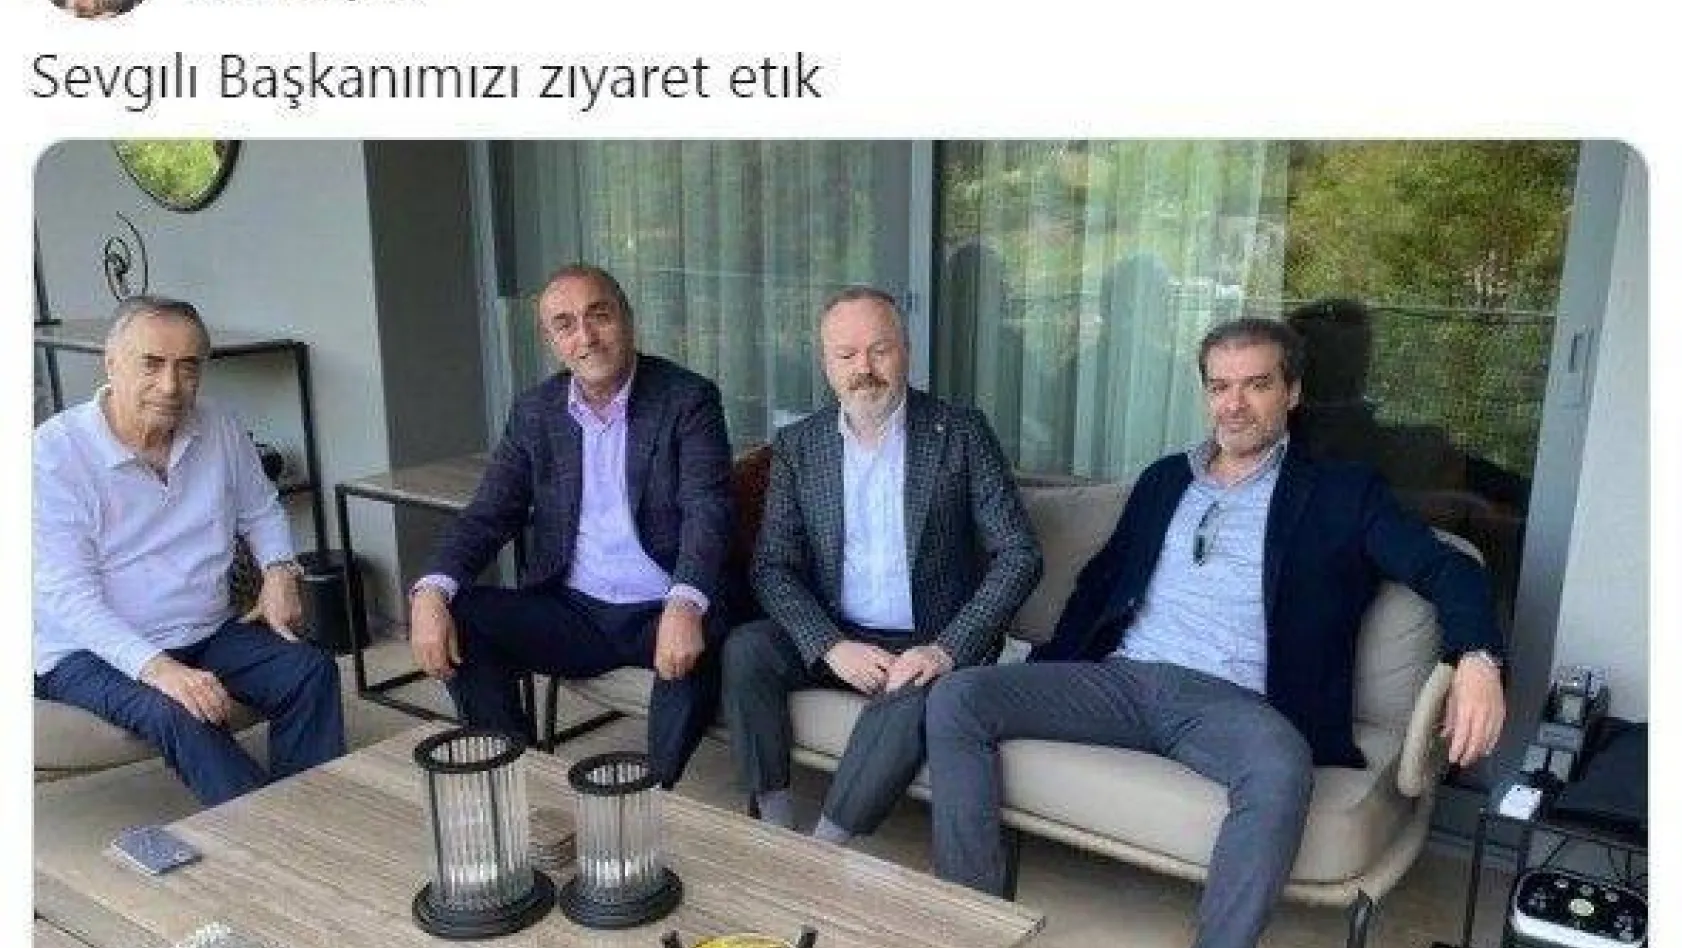 Galatasaraylı yöneticiler Başkan Cengiz'i unutmadı